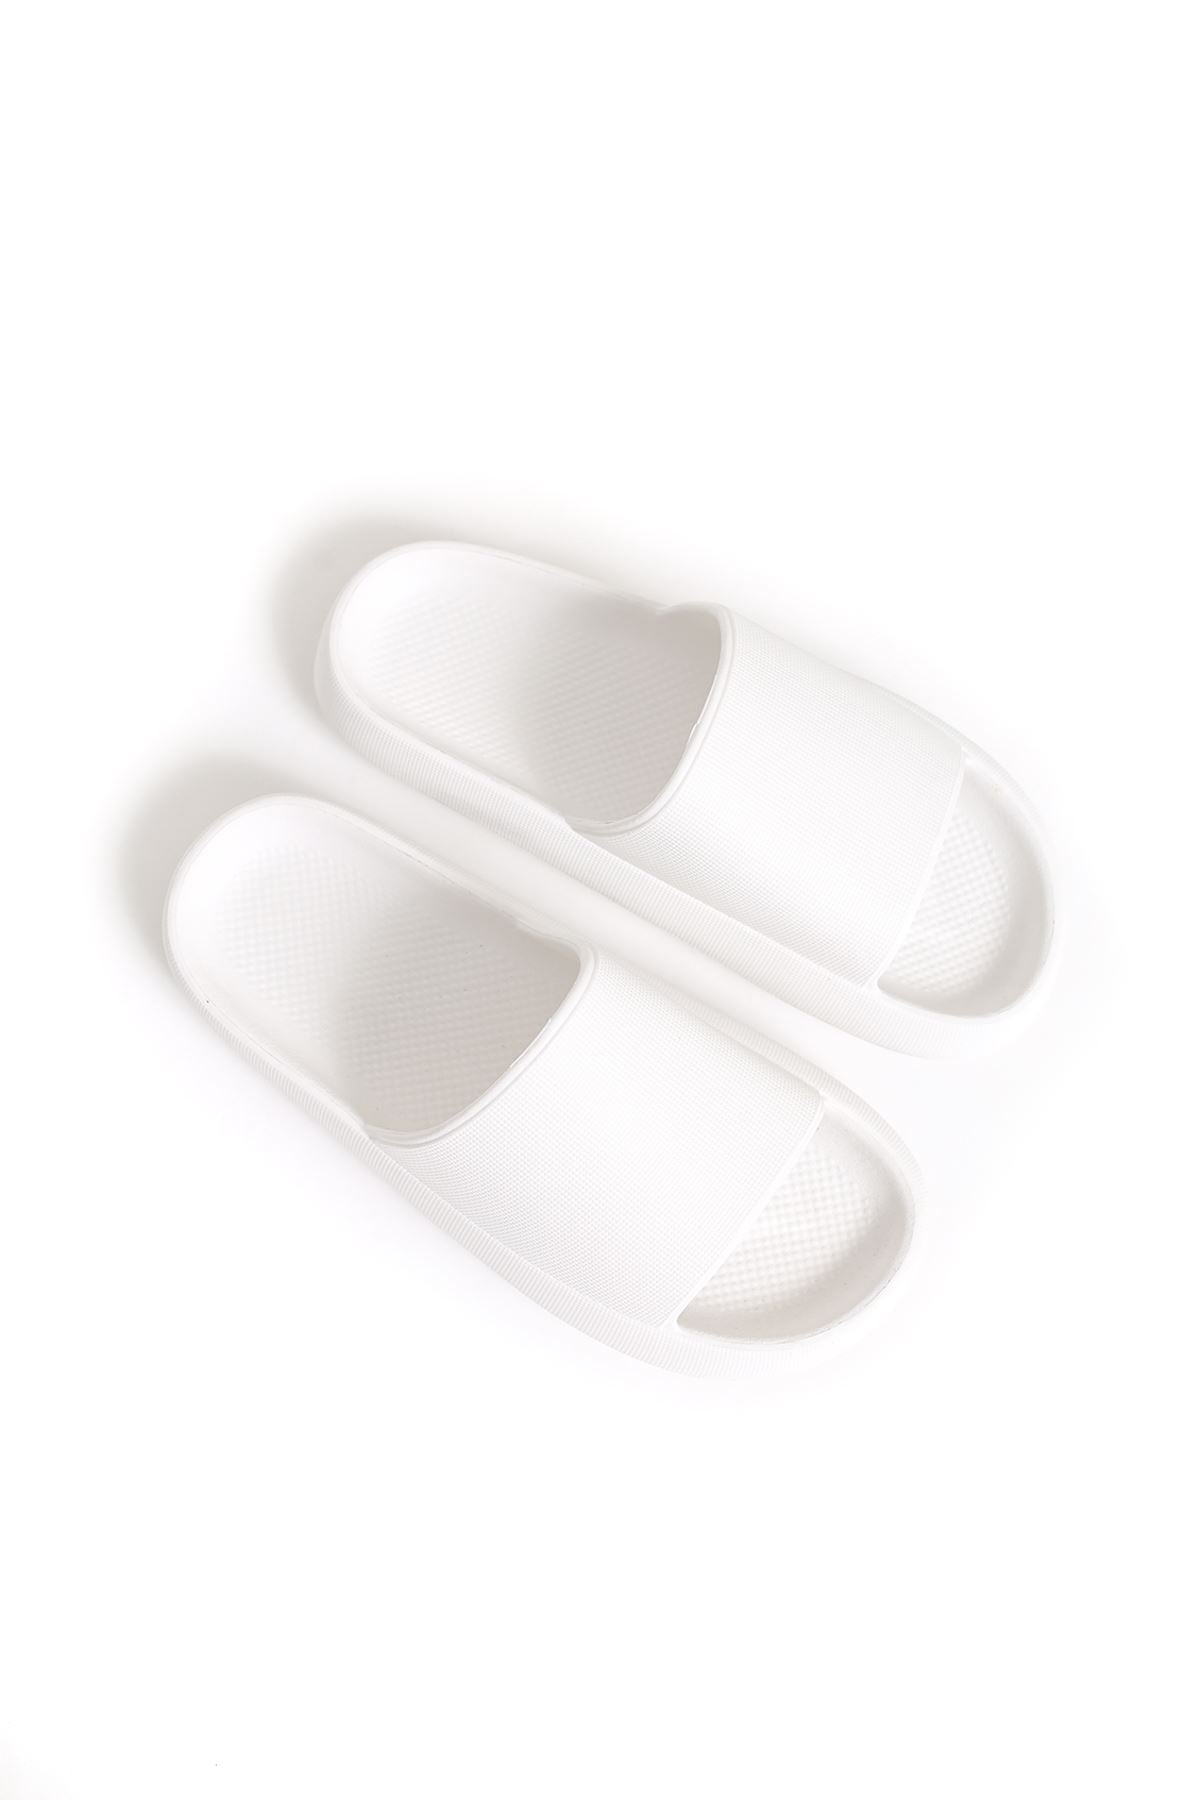 STM Design Cool Men's Slippers WHITE - STREETMODE™